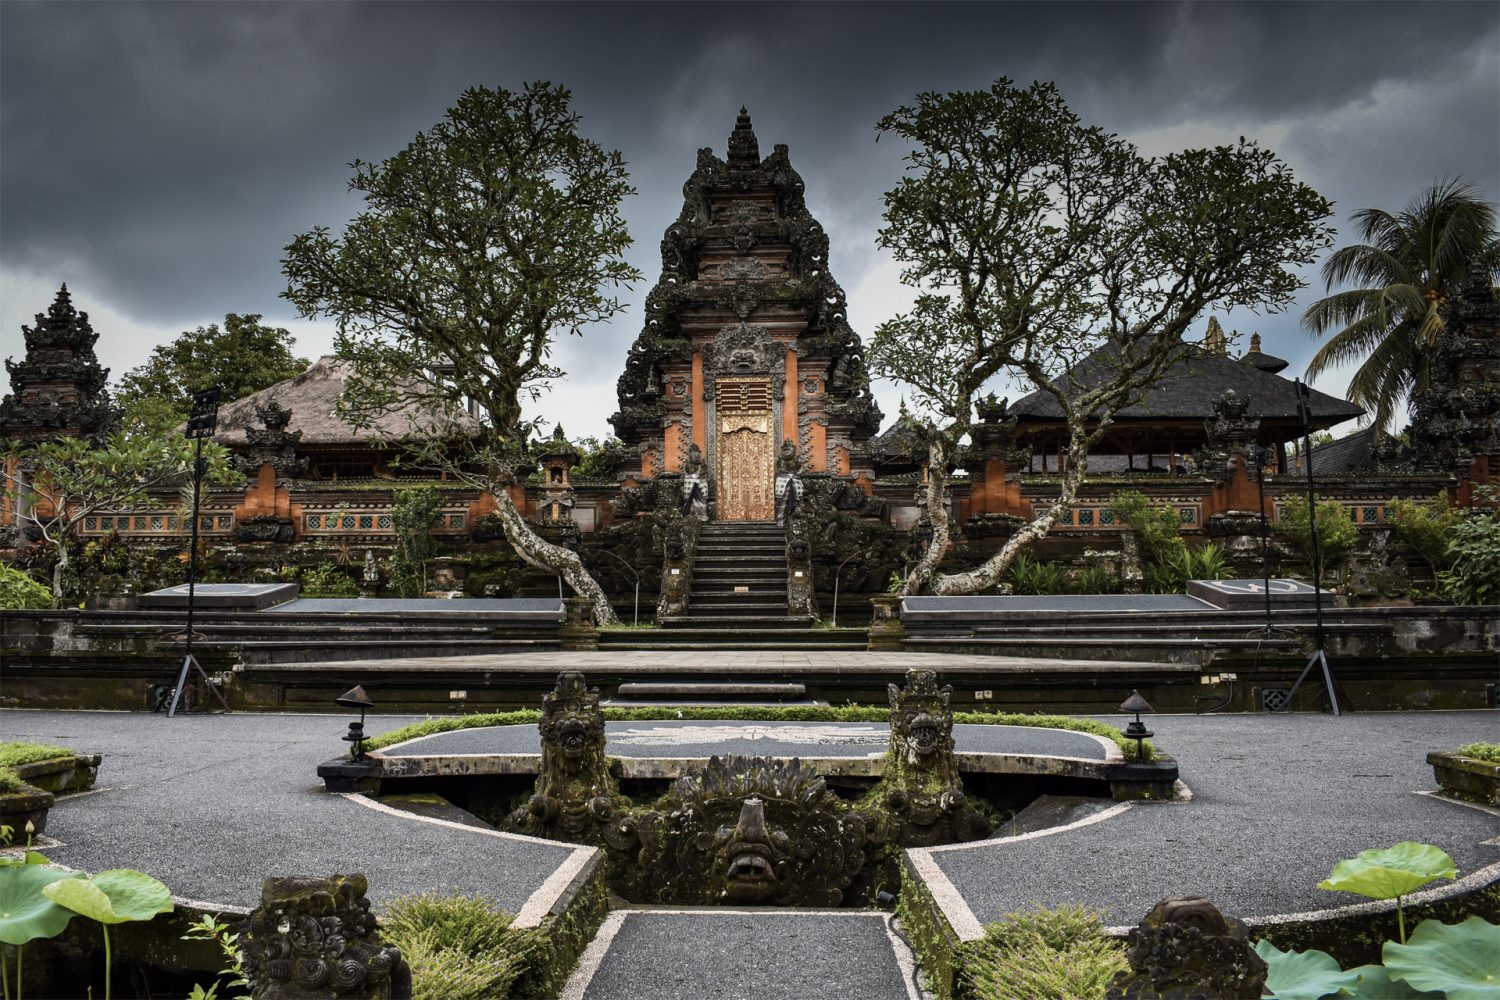 Temple at Bali